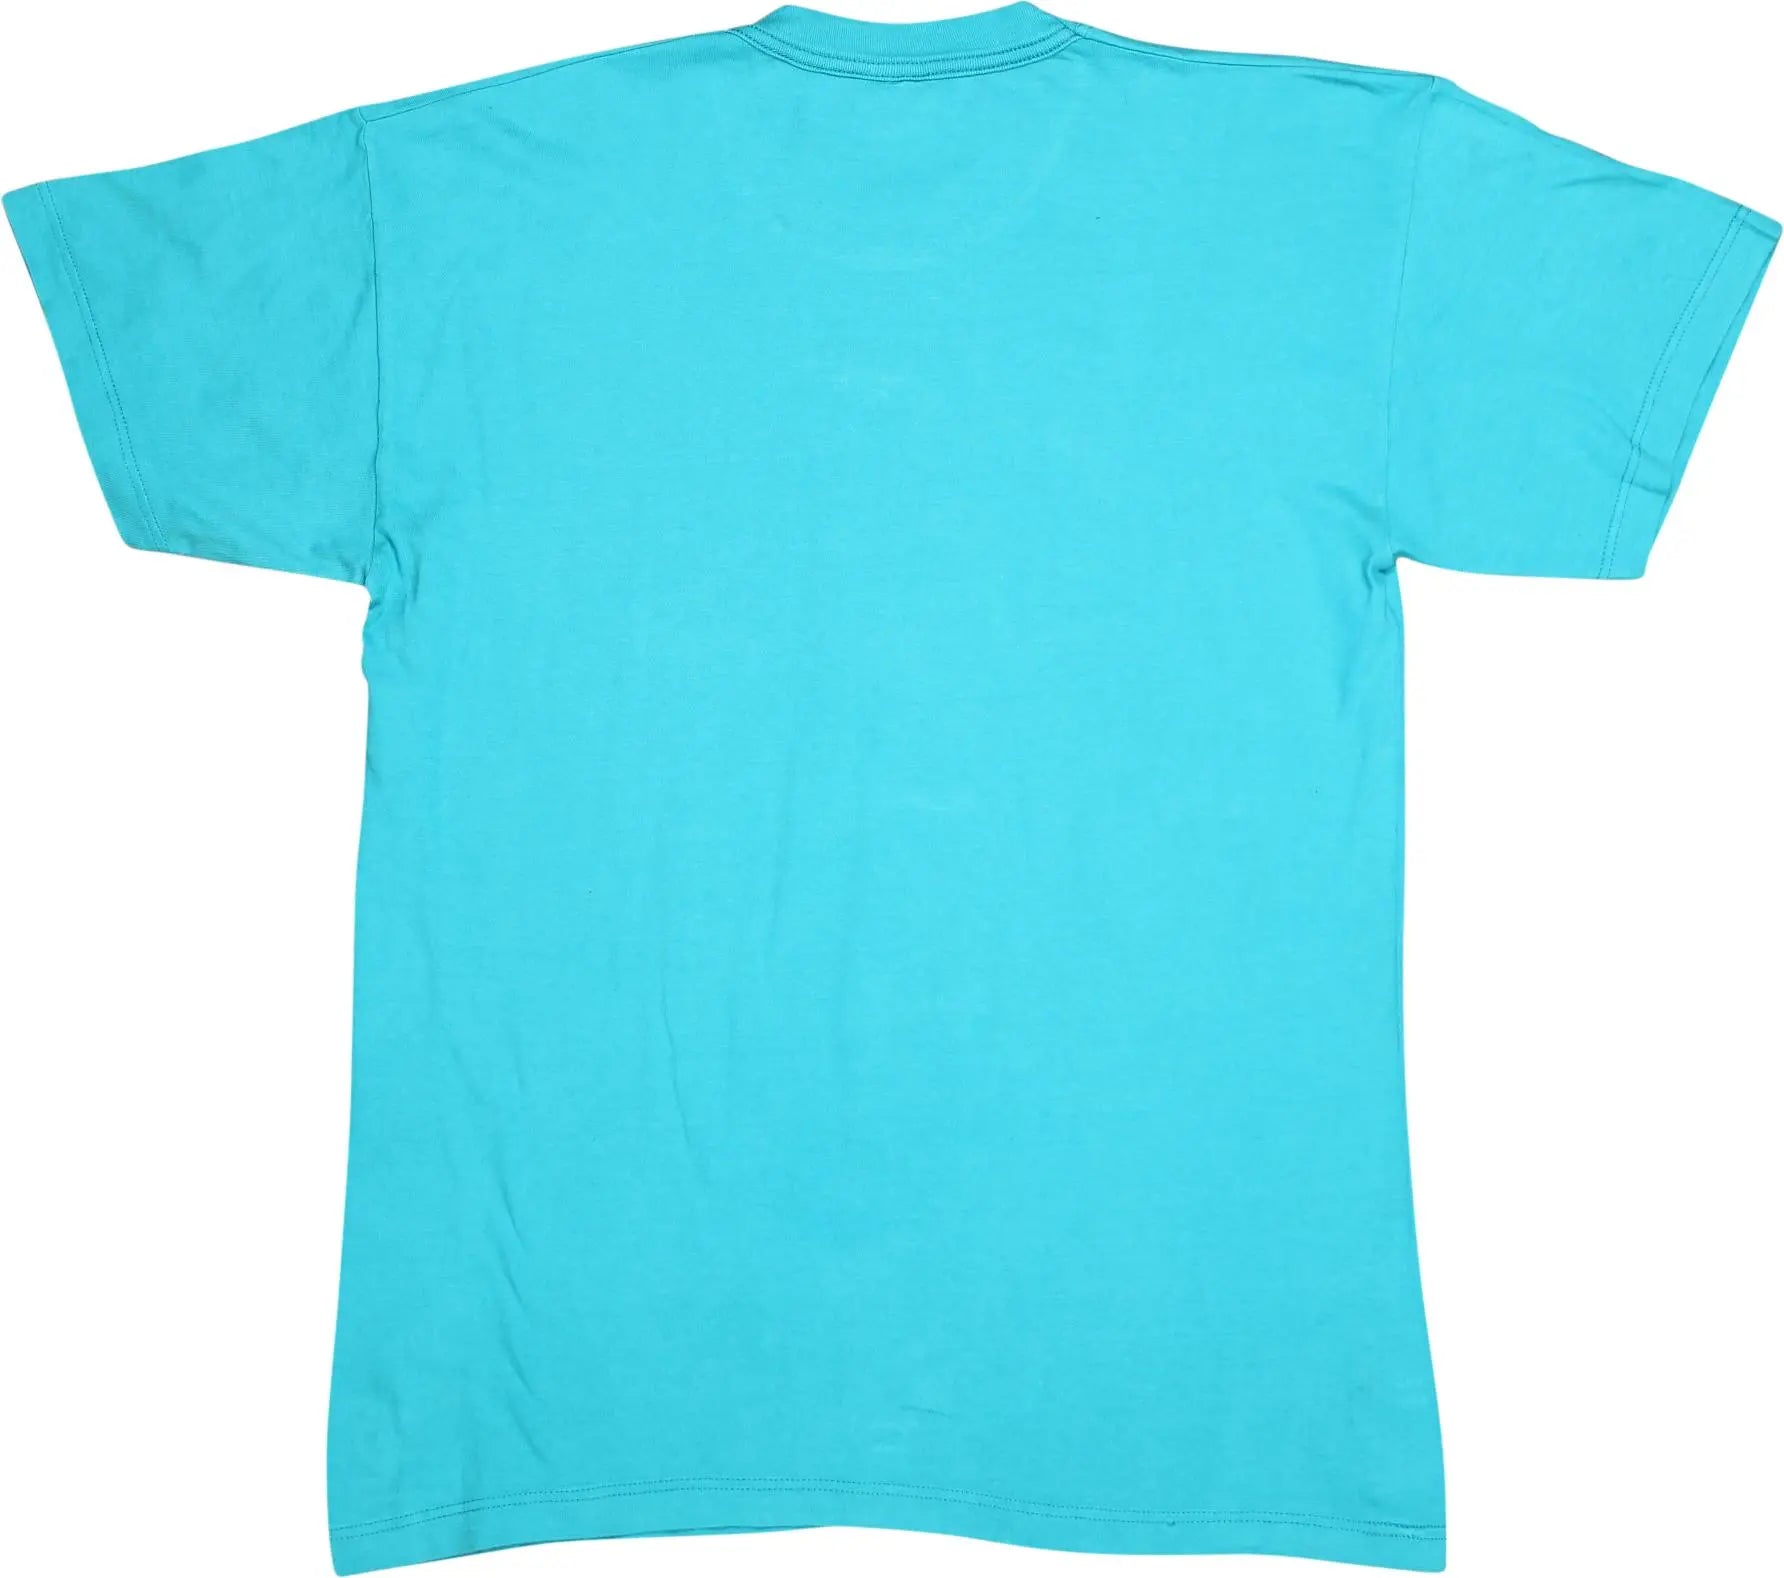 Diadora - Blue T-shirt by Diadora- ThriftTale.com - Vintage and second handclothing